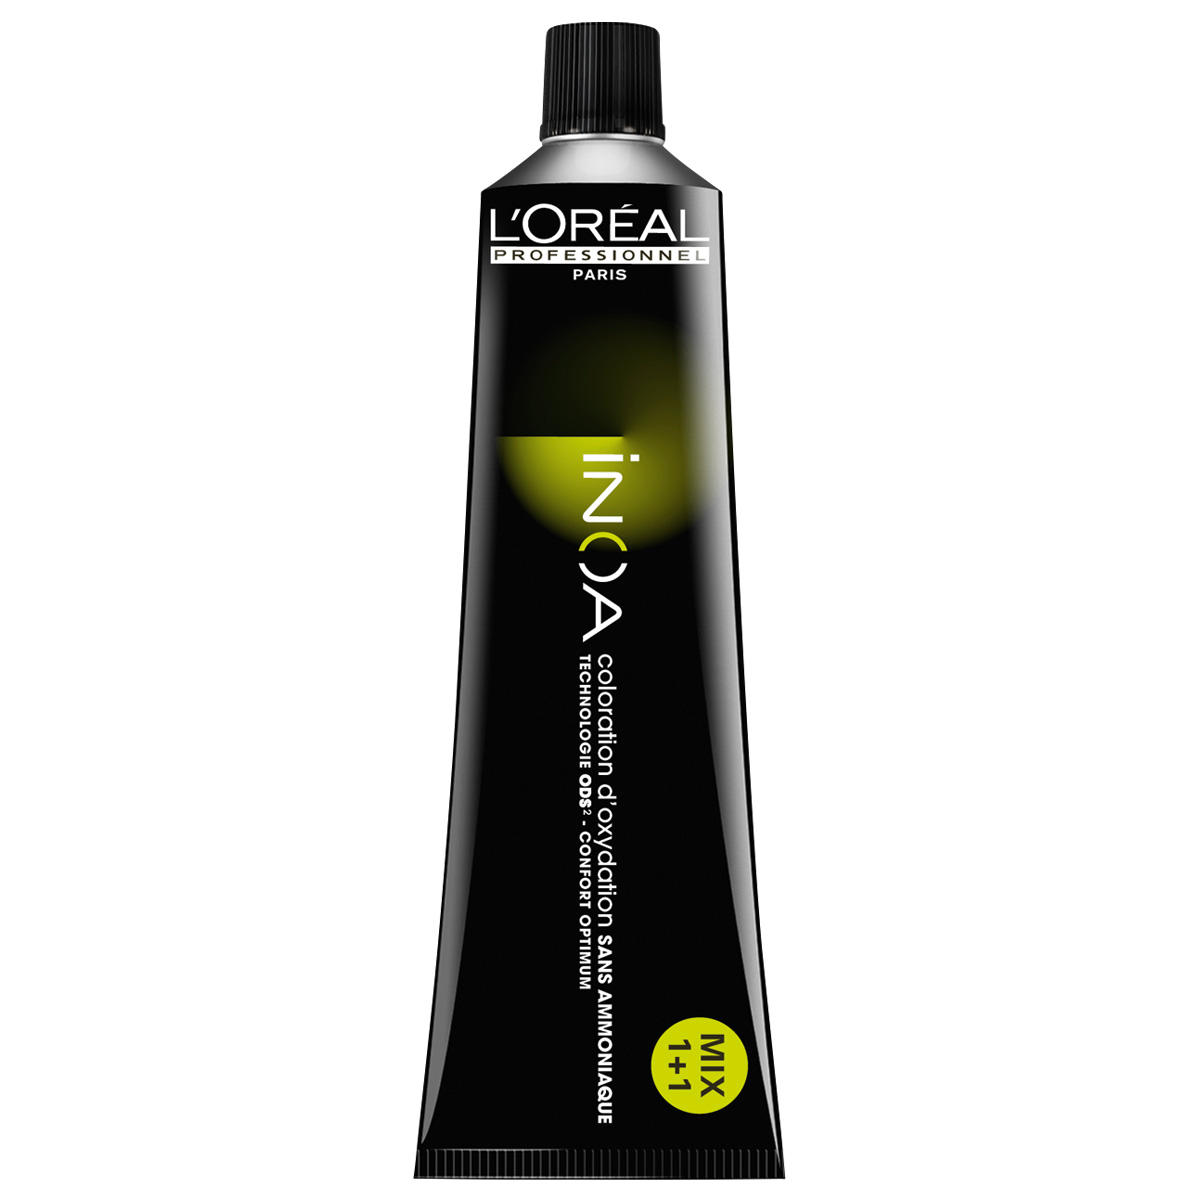 L'Oréal Professionnel Paris Coloration 10 Rubio platino, tubo 60 ml